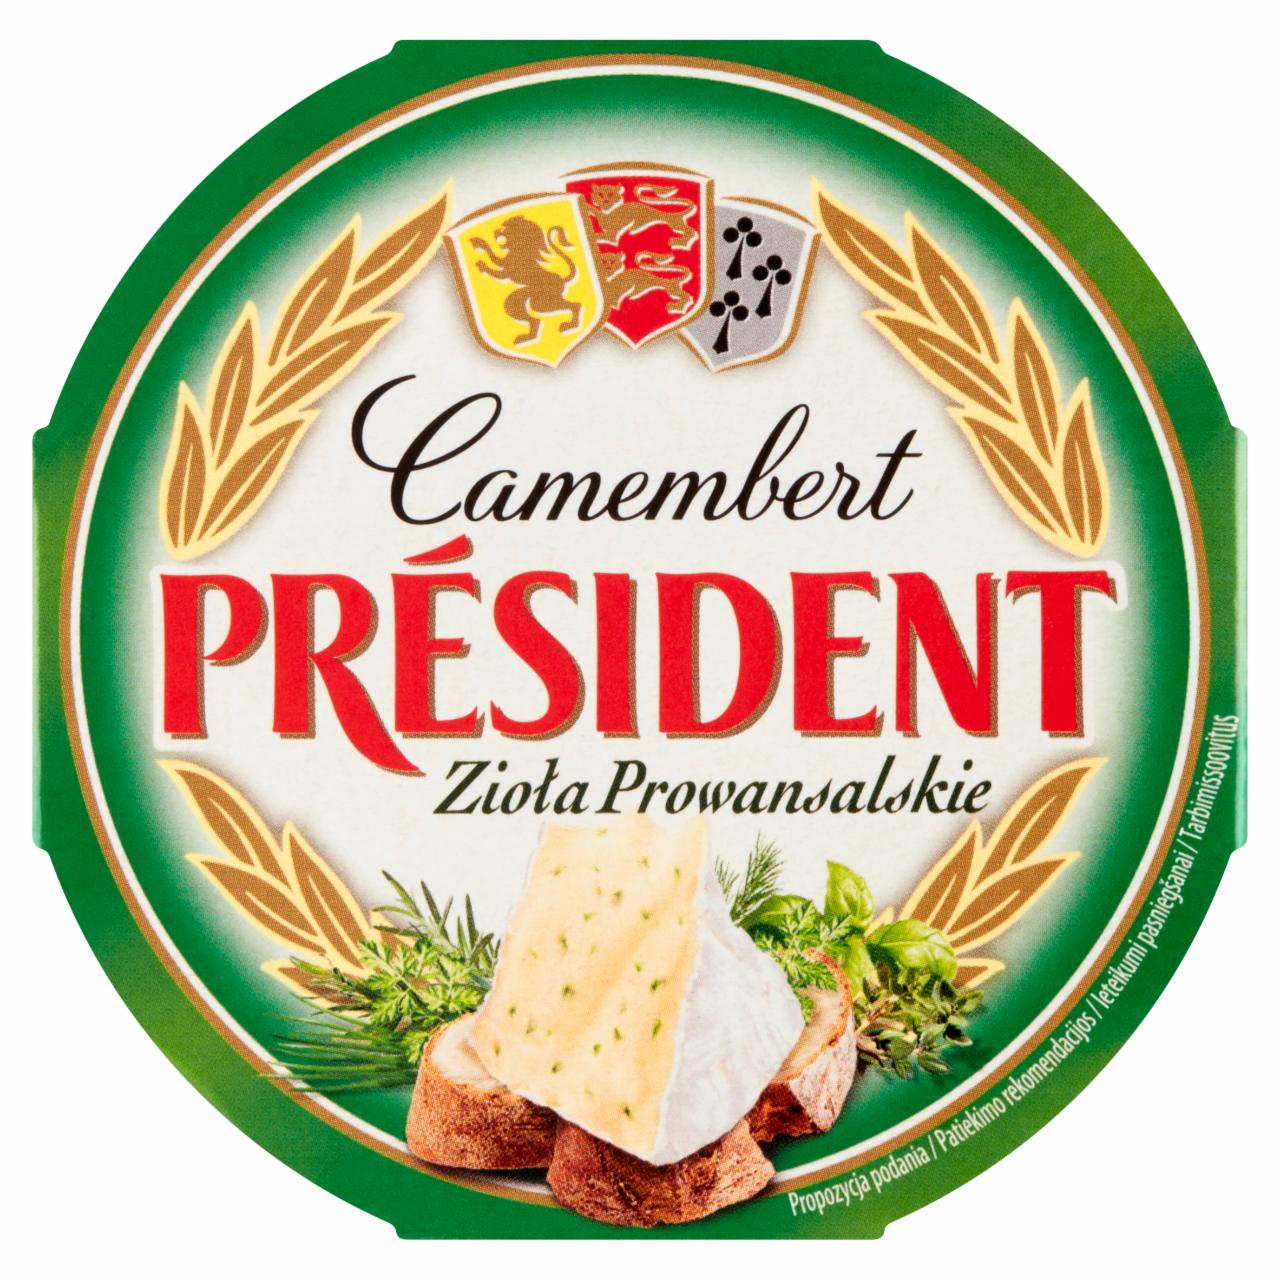 Zdjęcia - Ser Camembert zioła prowansalskie Président